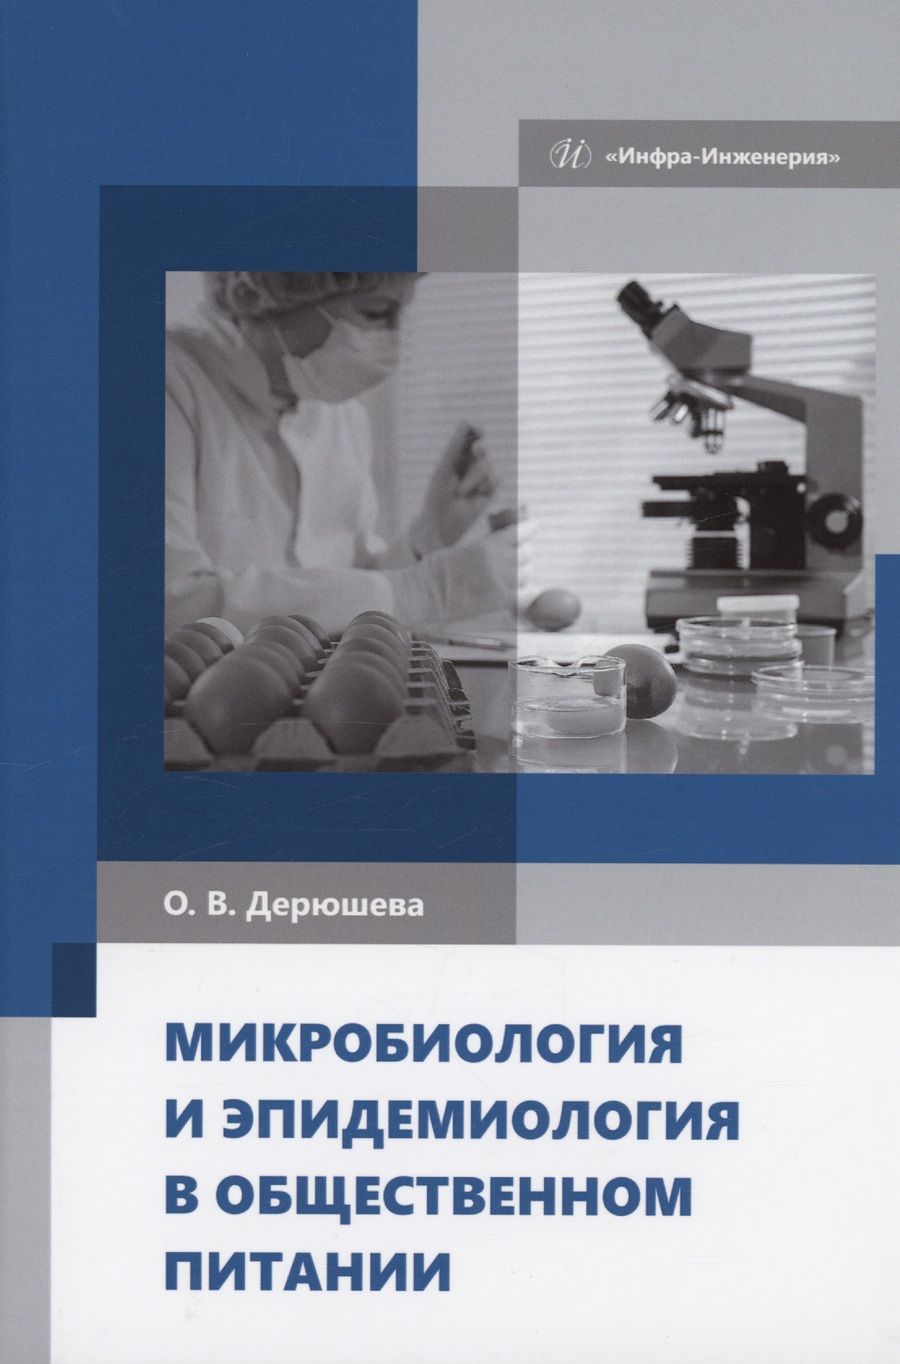 Обложка книги "Дерюшева: Микробиология и эпидемиология в общественном питании. Учебник"